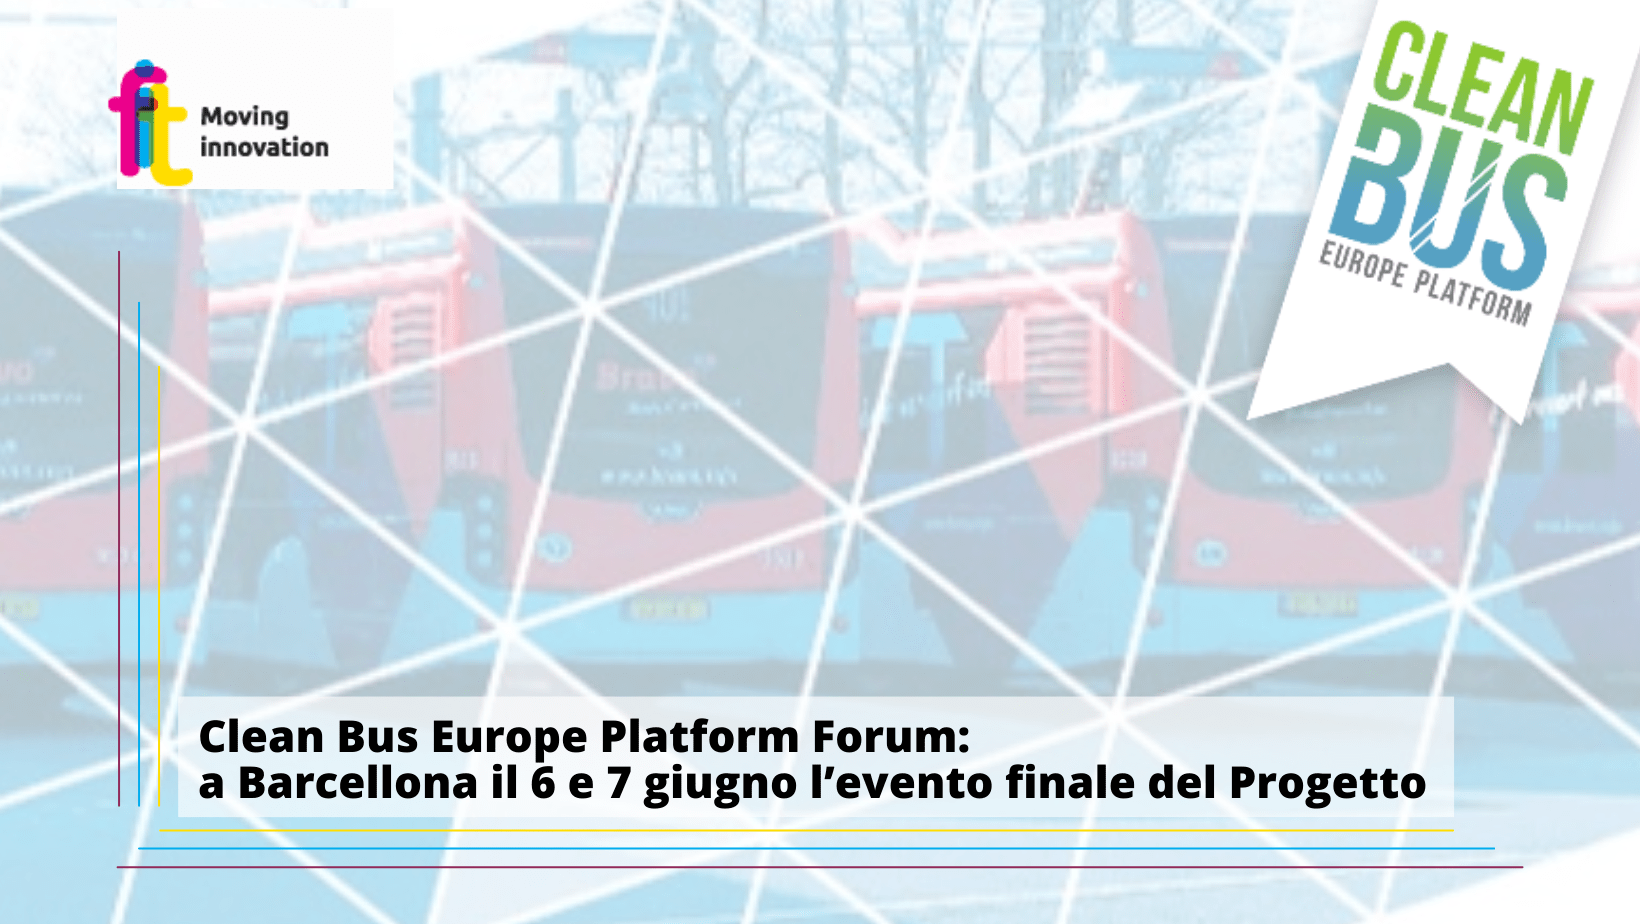 Clean Bus Europe Platform Forum: a Barcellona il 6 e 7 giugno l’evento finale del Progetto a cui prenderà parte anche Fabio Cartolano, Managing Director FIT Consulting